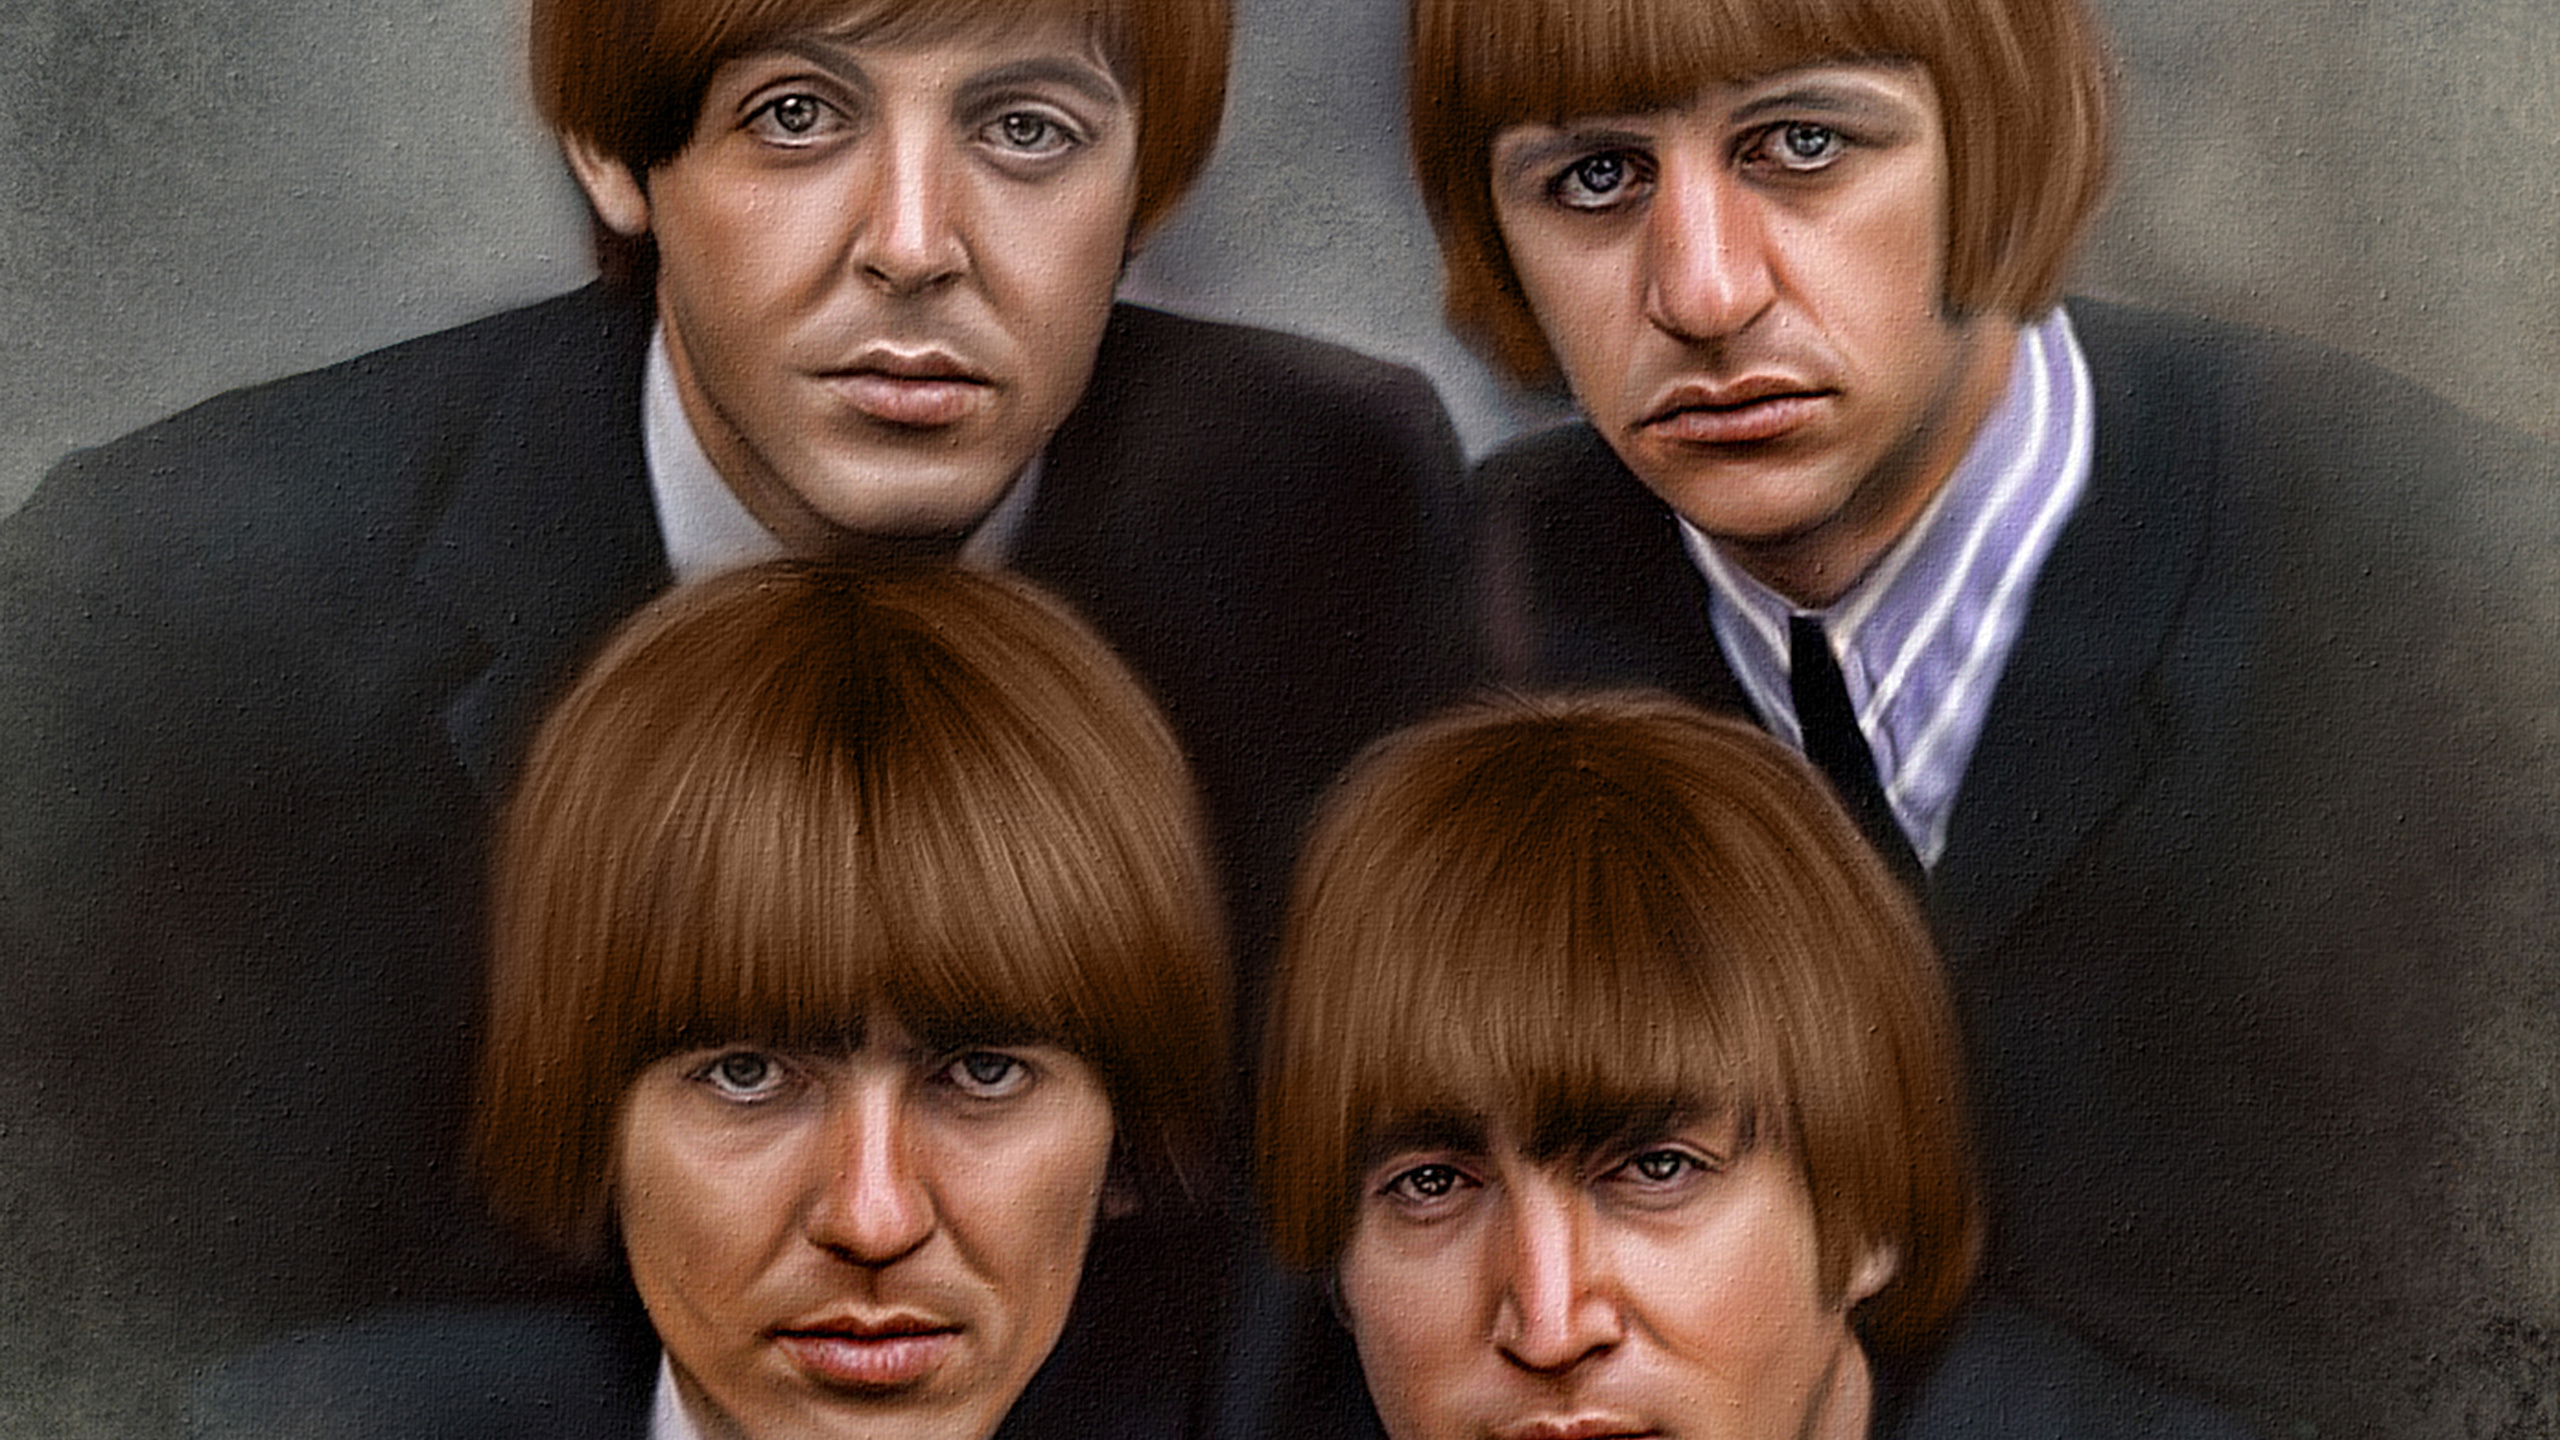 壁紙 2560x1440 ビートルズ ジョン レノン 描かれた壁紙 Paul Mccartney George Harrison Ringo Starr 音楽 有名人 ダウンロード 写真